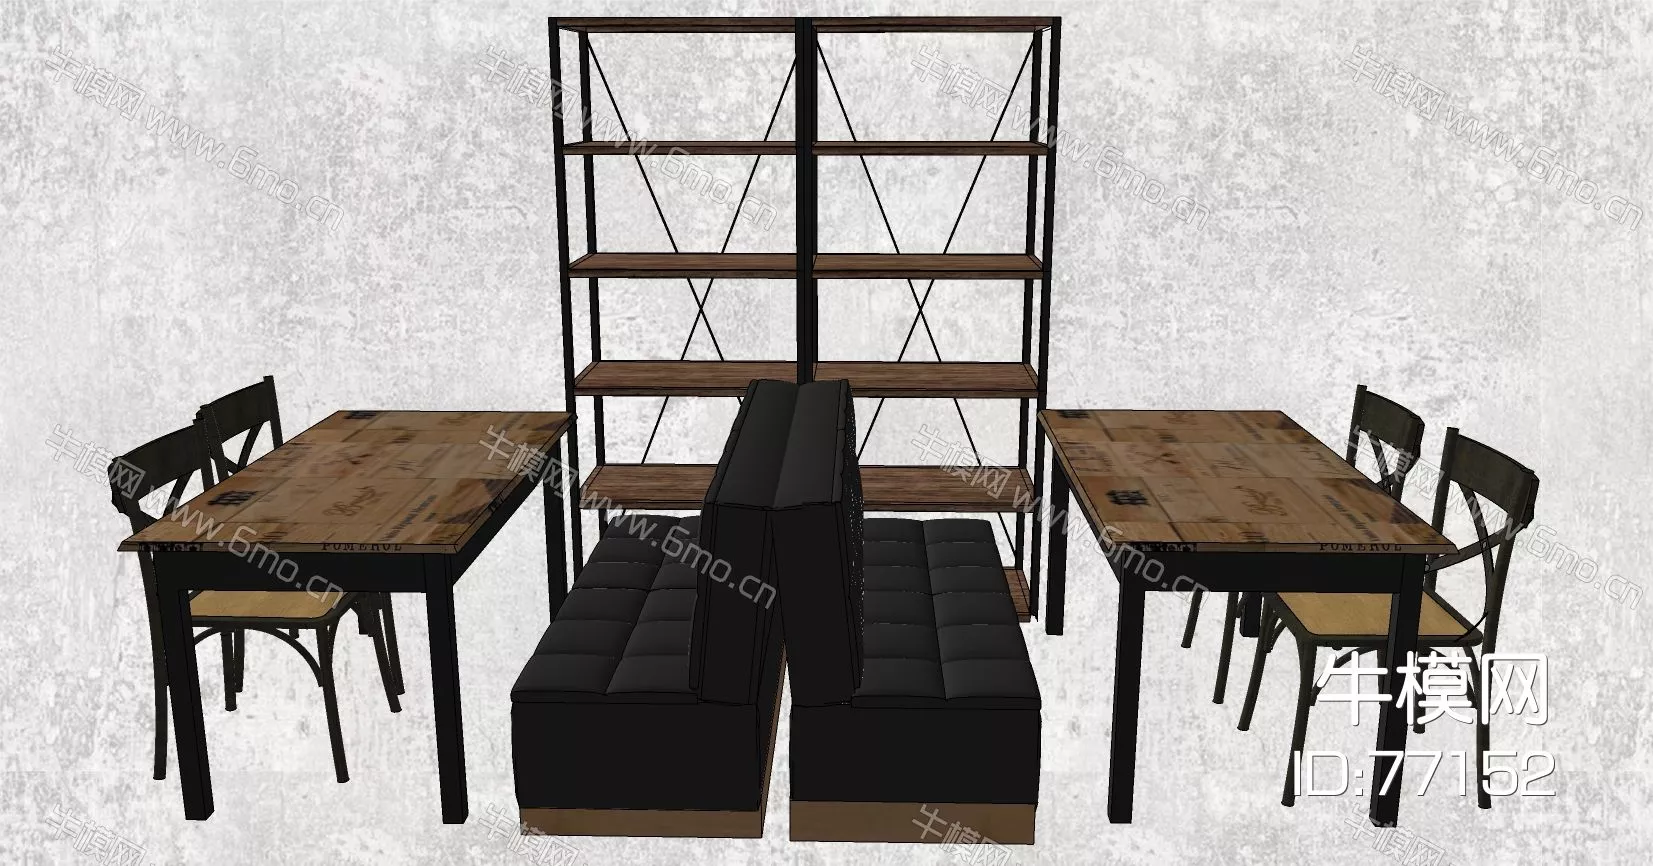 INDUSTRIAL DINING TABLE SET - SKETCHUP 3D MODEL - ENSCAPE - 77152